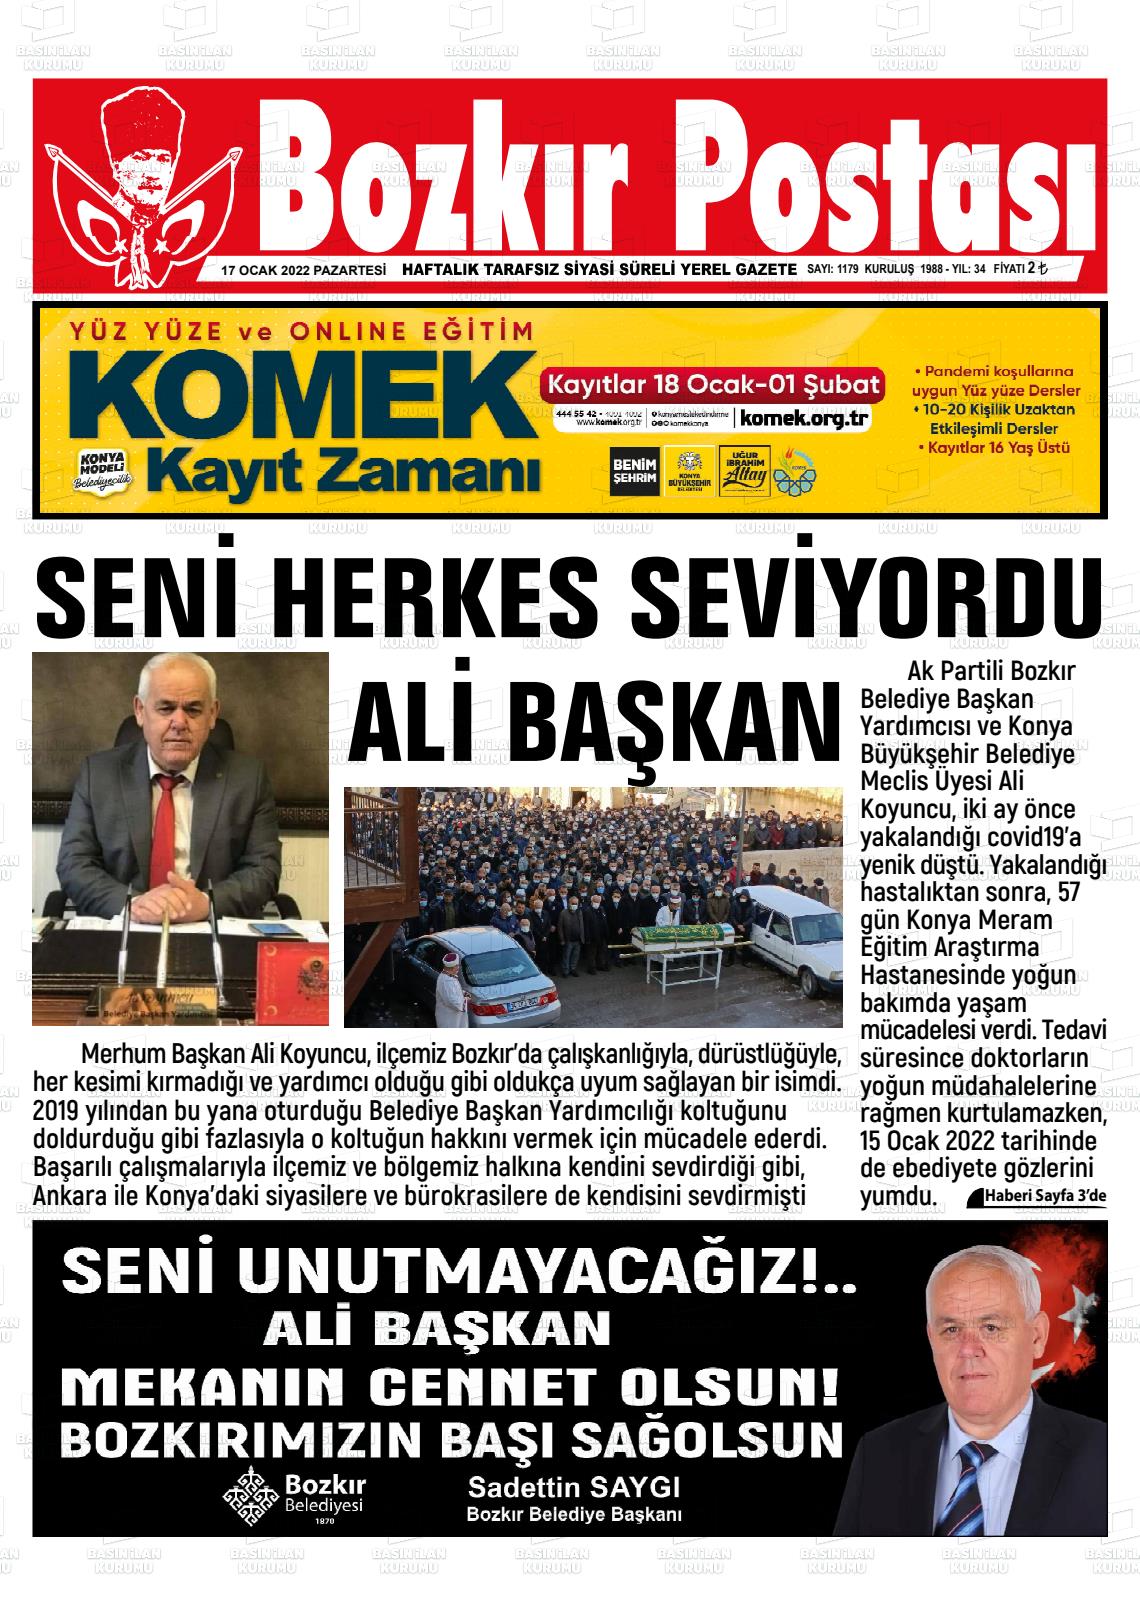 17 Ocak 2022 Bozkır Postası Gazete Manşeti